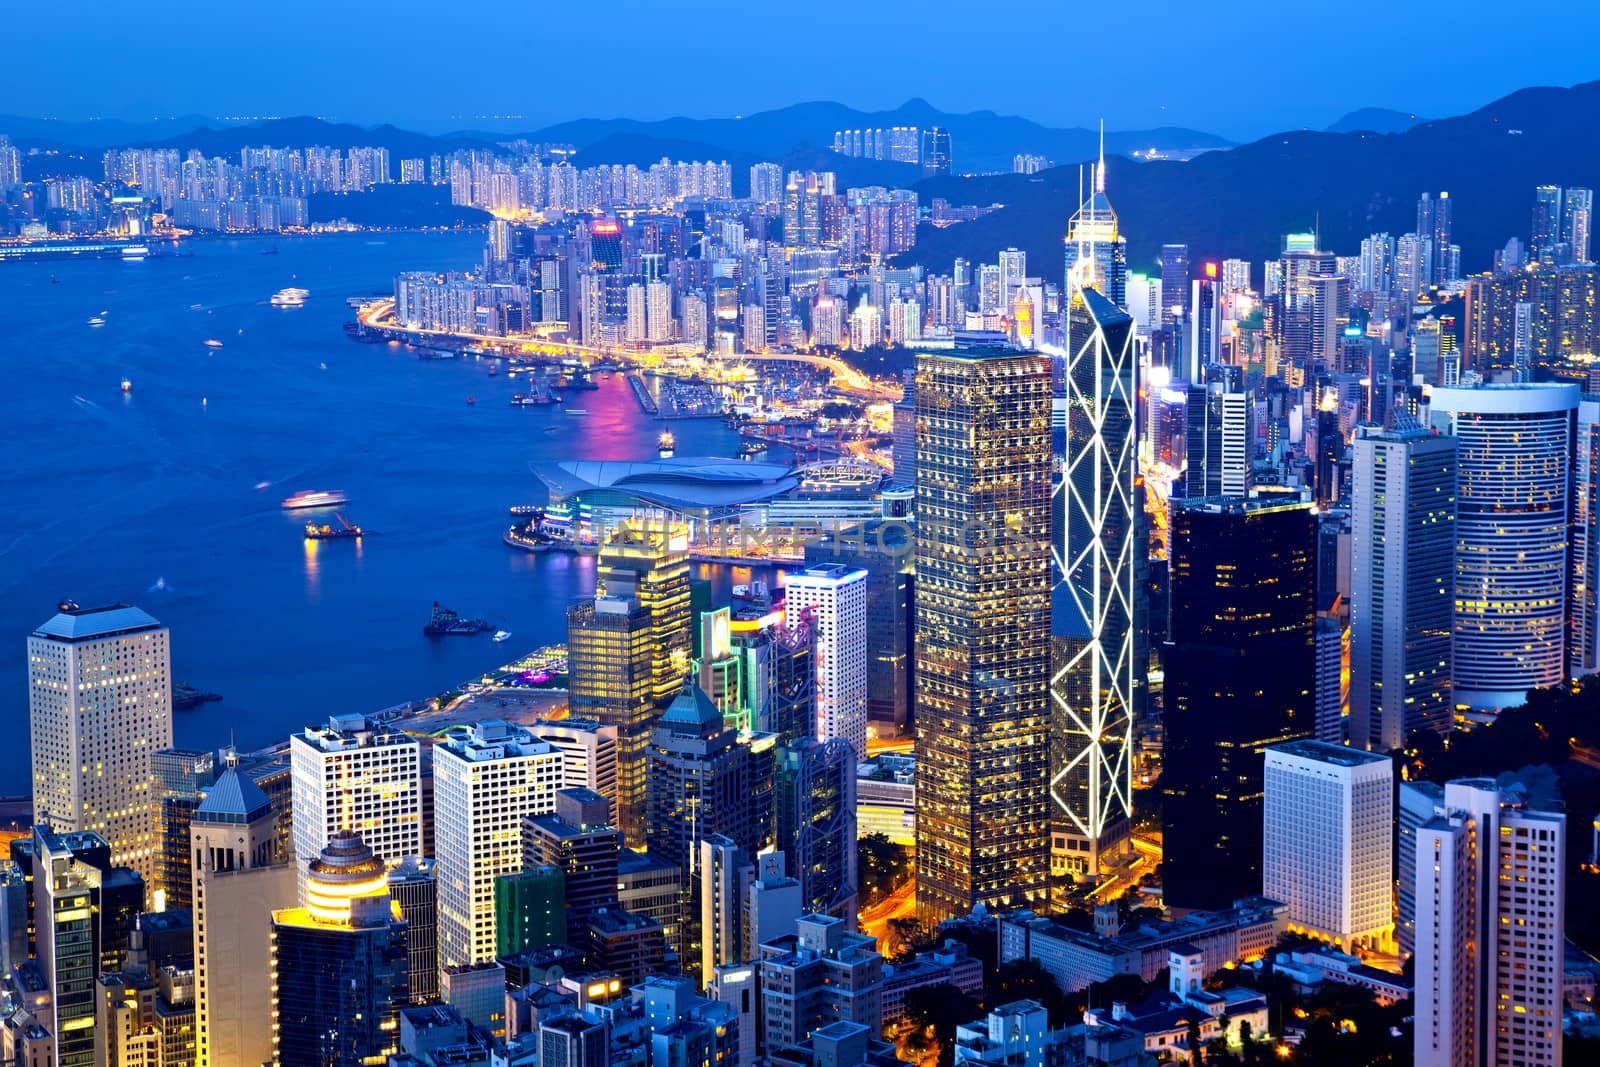 Hong Kong city night view at peak by kawing921